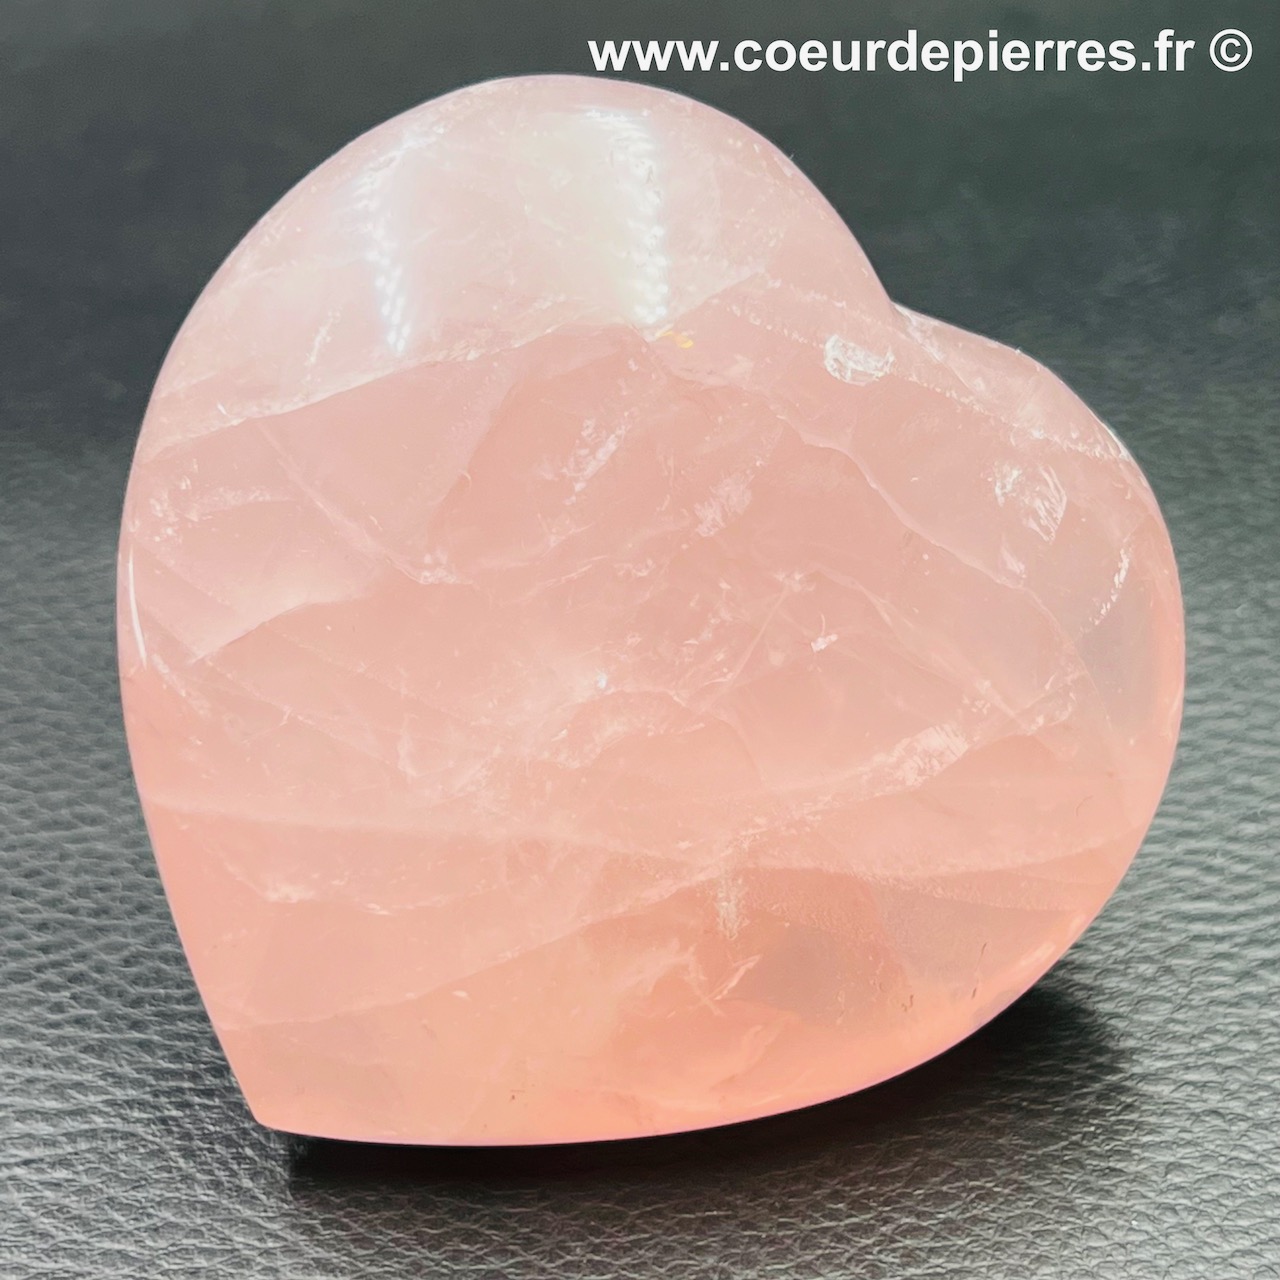 Coeur en quartz rose de Madagascar (réf cqr11)